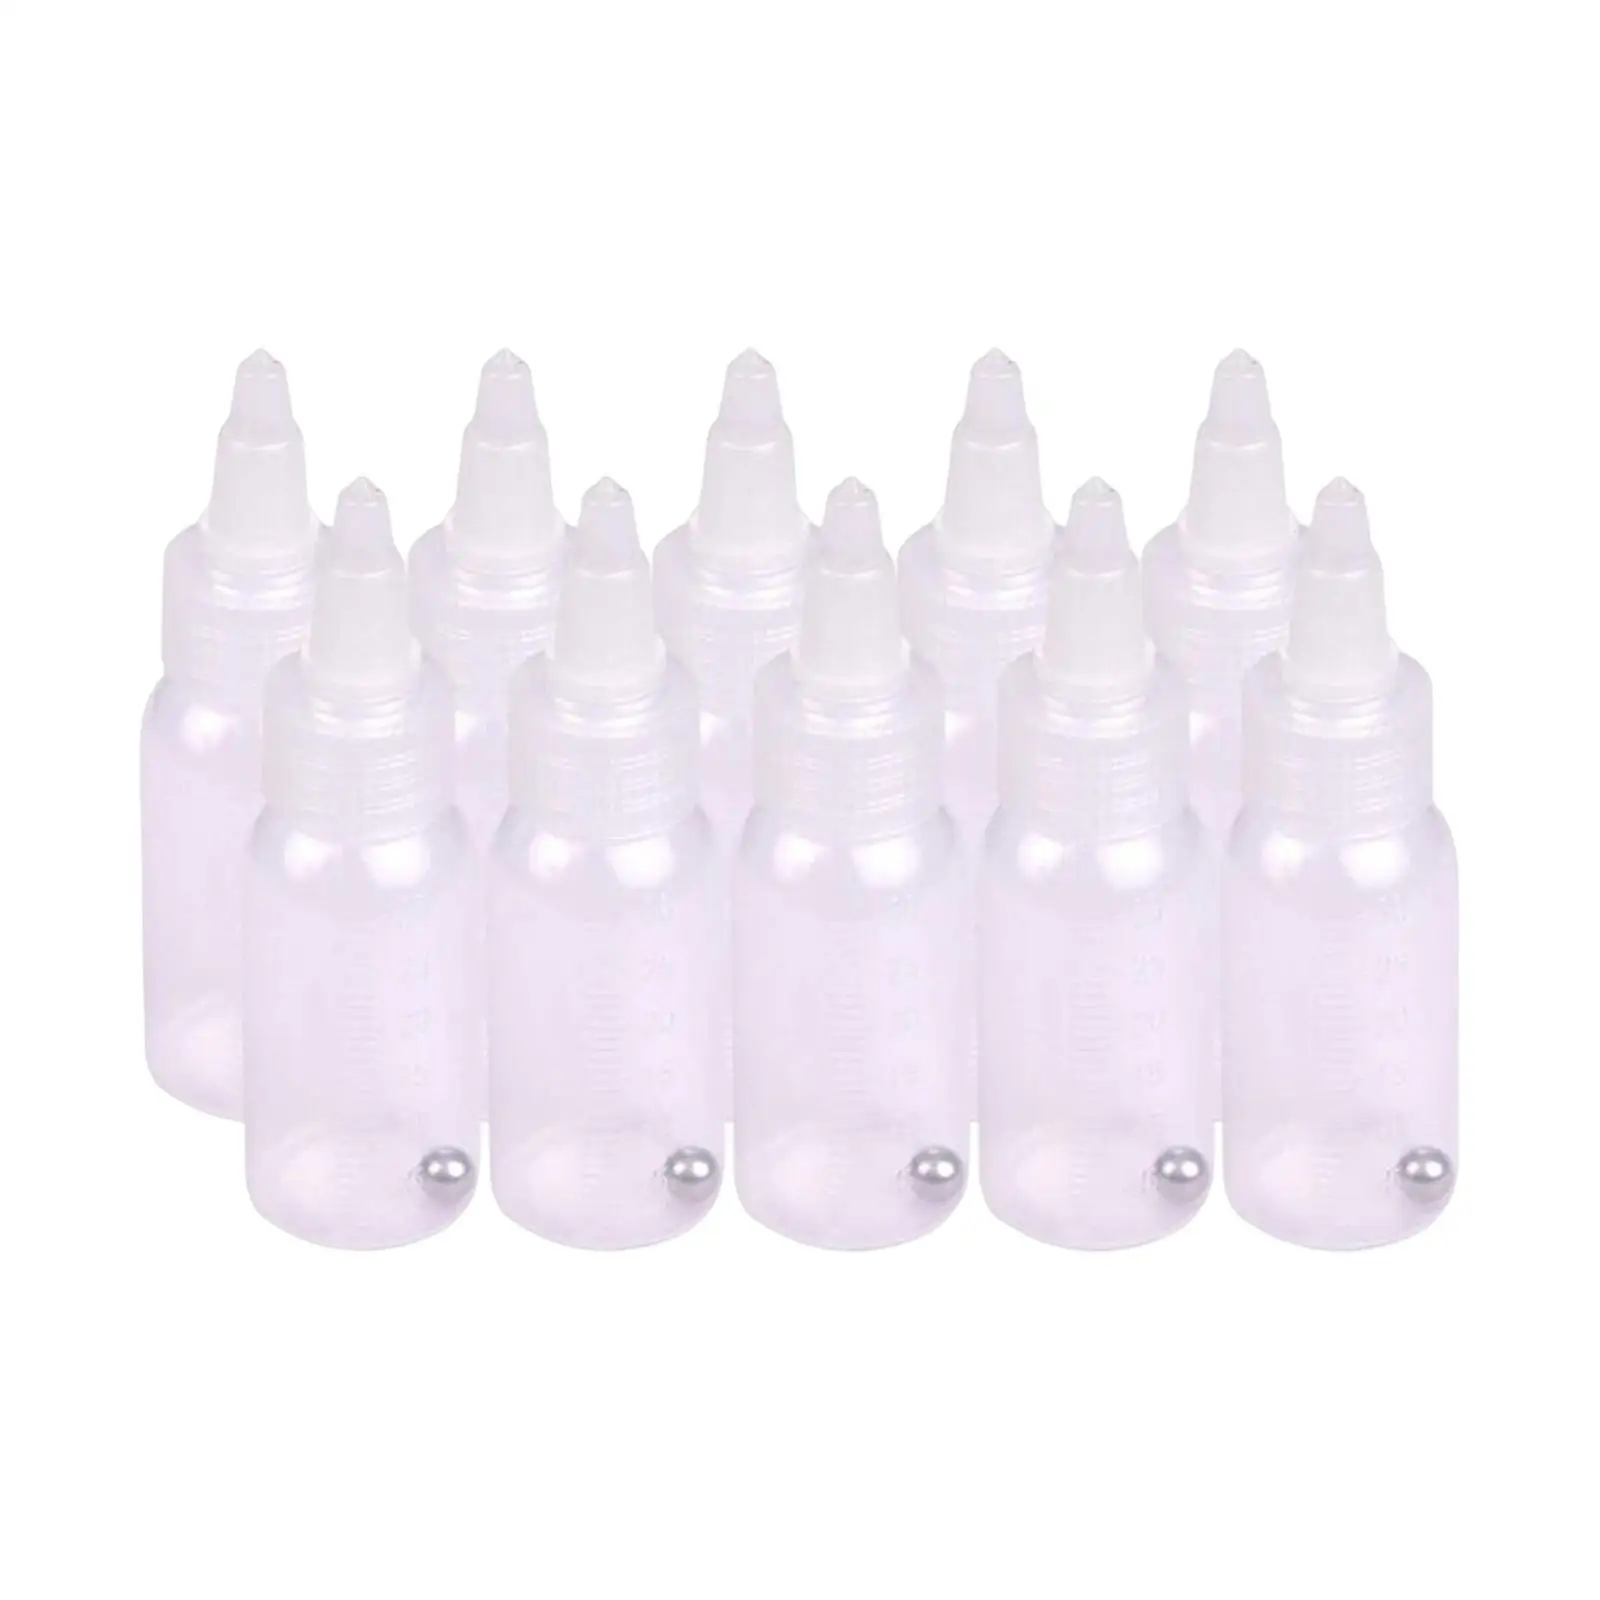 10 Adet Boş Airbrush Şişeleri Boya Karıştırma depolama şişesi Damlalık Şişeler Boya Depolama Şişeleri Yağ Hobi Modeli Boya Sosu